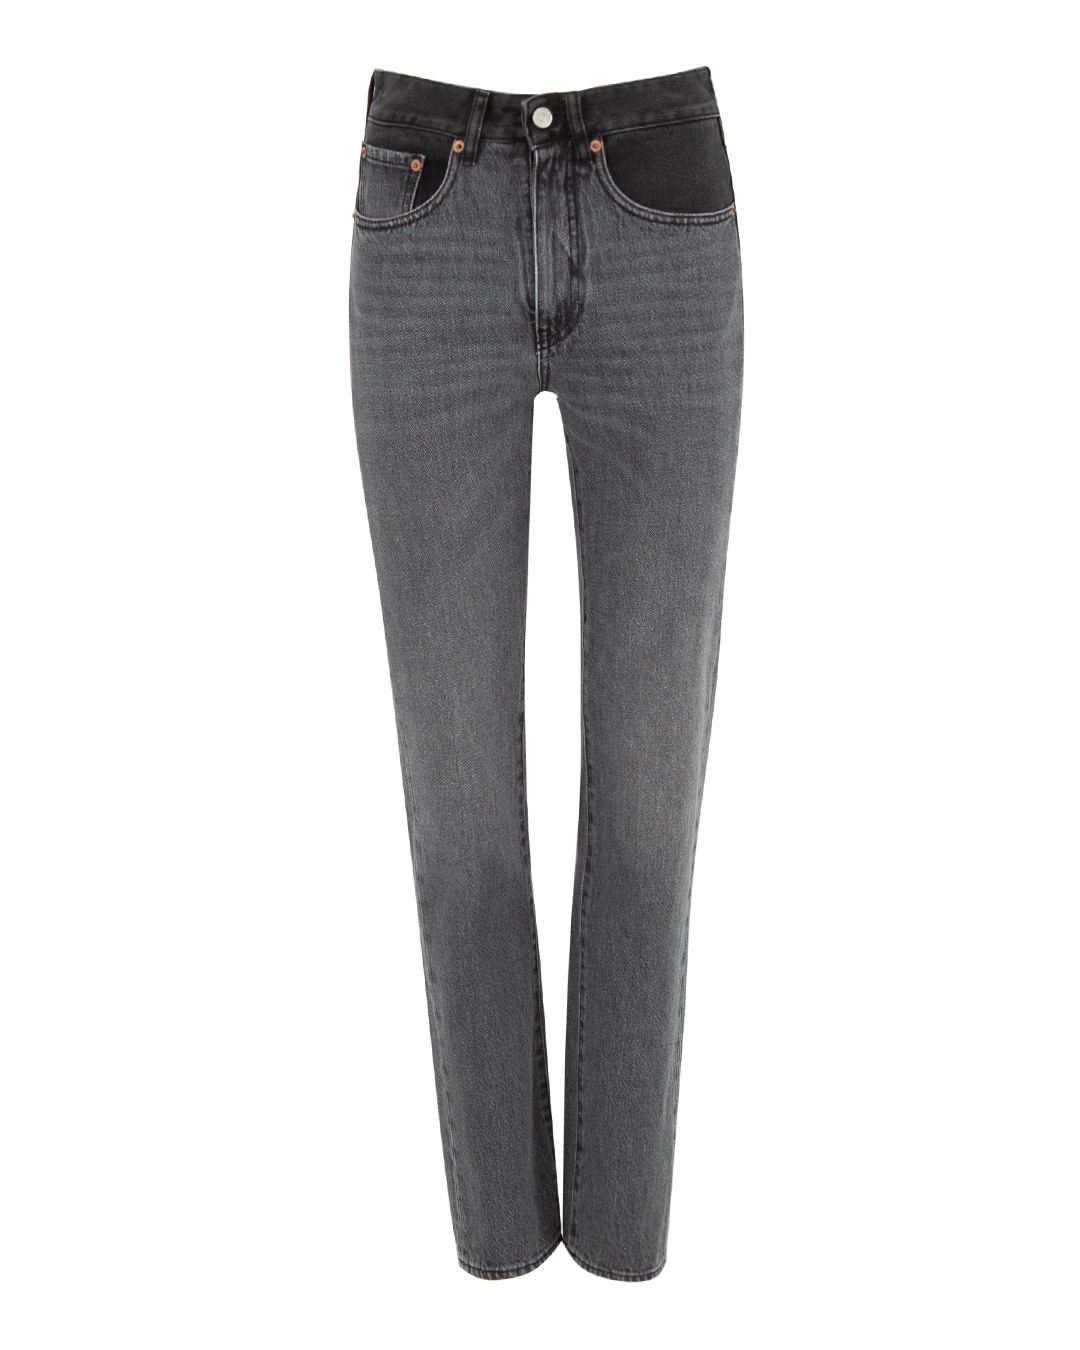 джинсы MM6 Maison Margiela S52LA0224 черный 27, размер 27